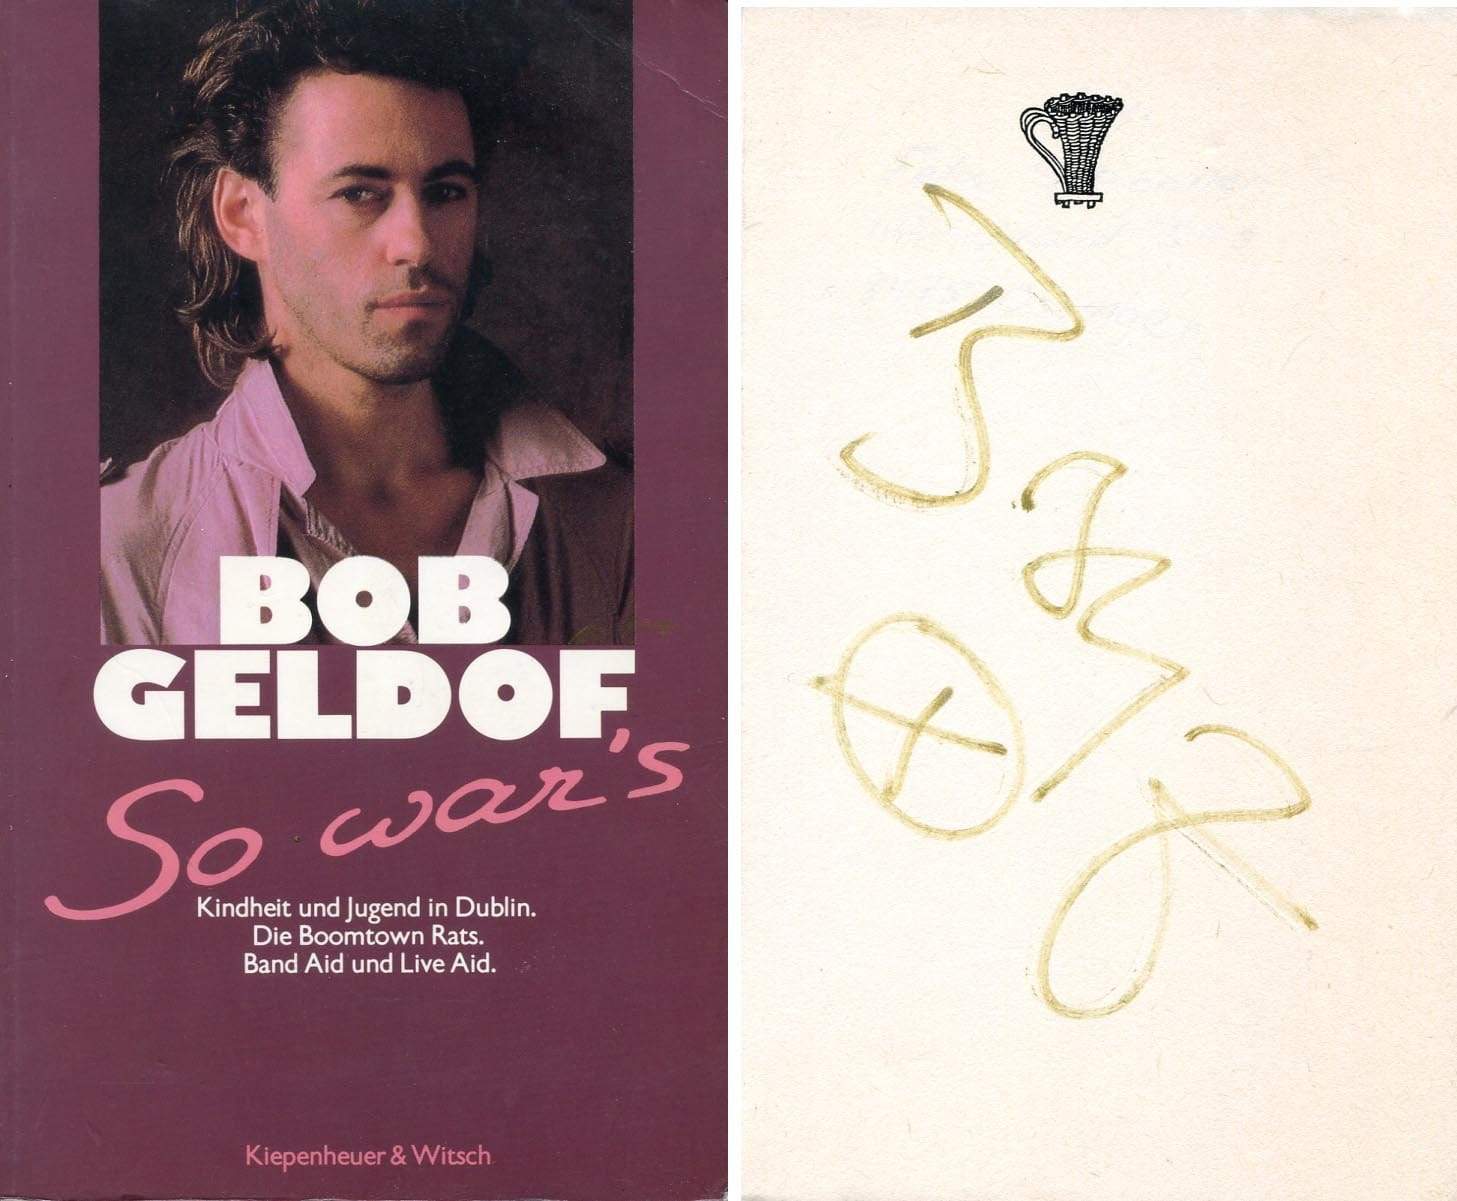 Bob  Geldorf Autograph Autogramm | ID 7207164543125